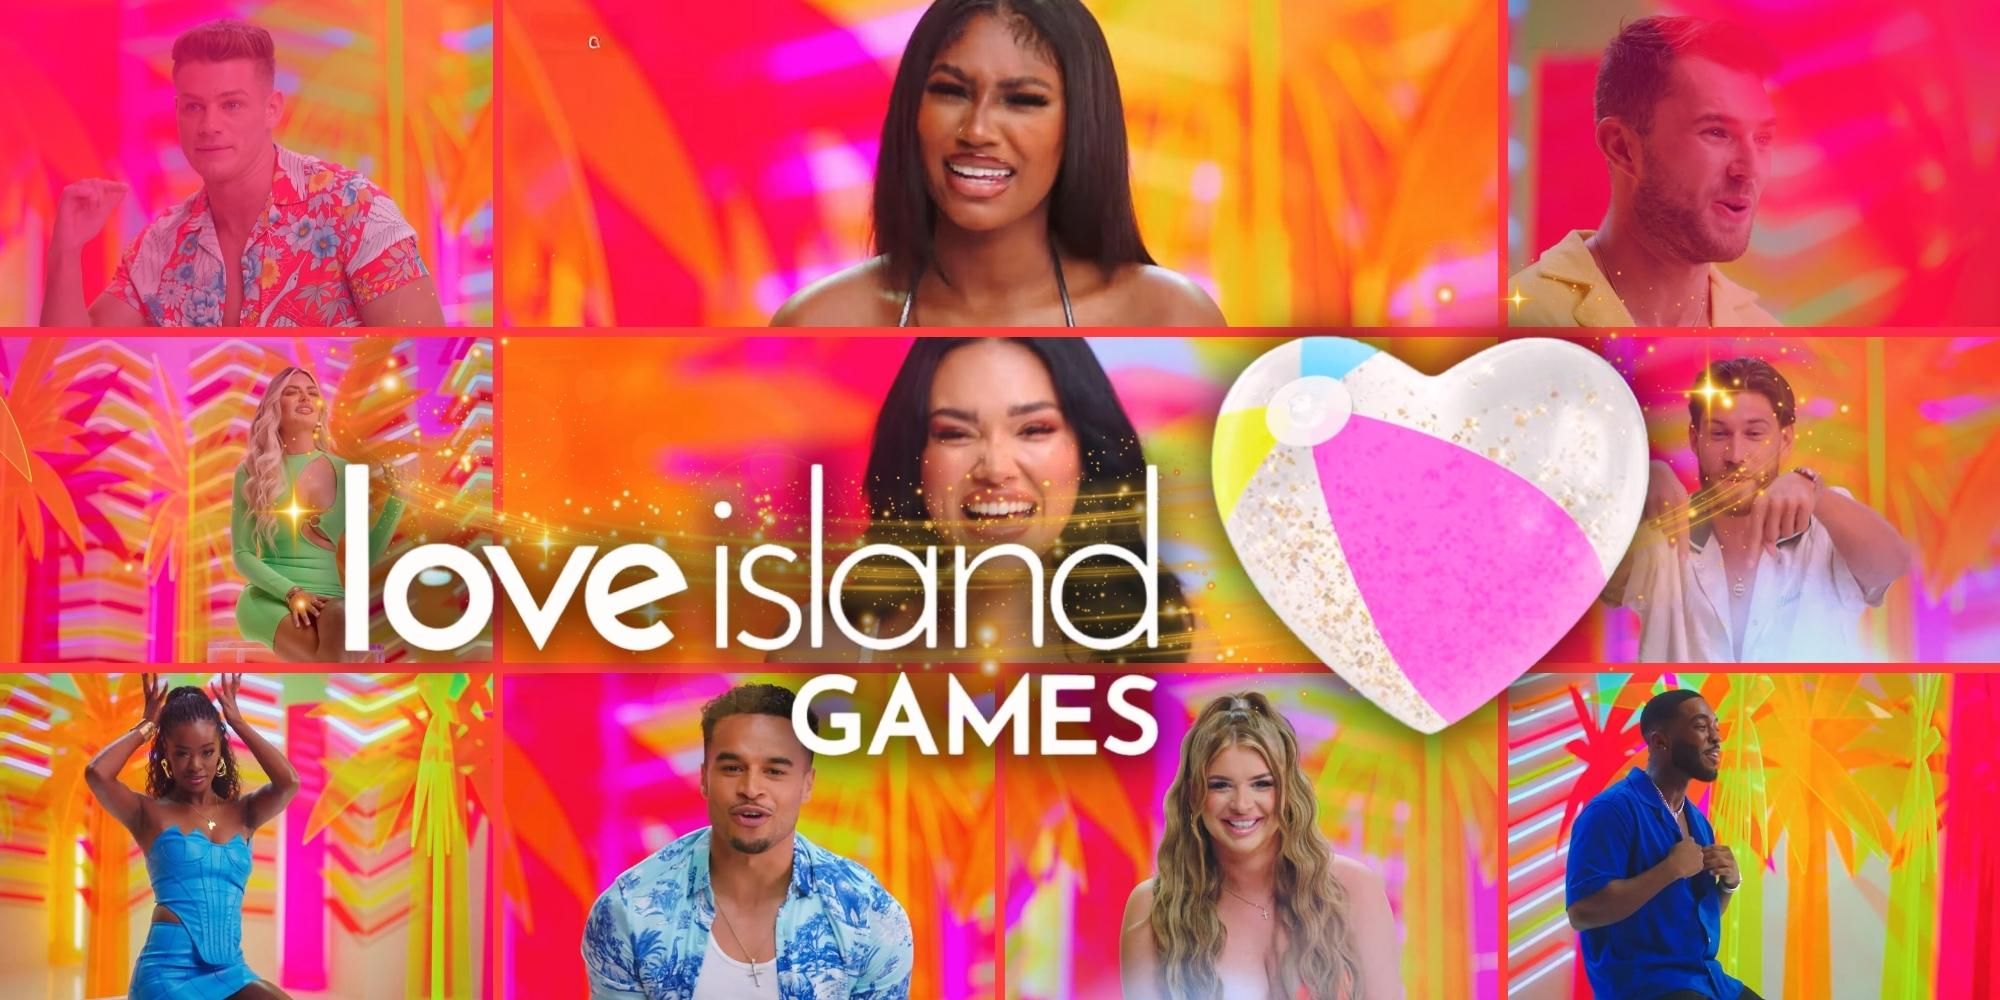 El tráiler de Love Island Games muestra intensos desafíos físicos a medida que los favoritos de los fanáticos traen el drama